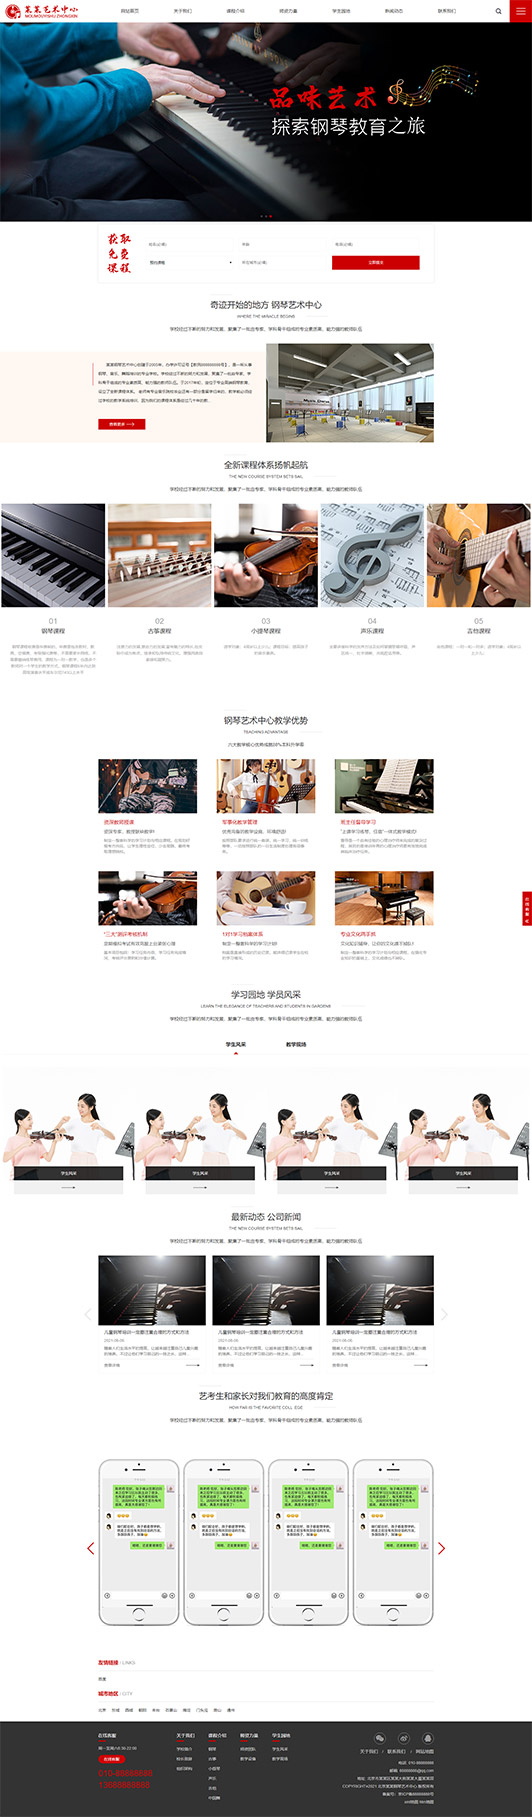 邵阳钢琴艺术培训公司响应式企业网站